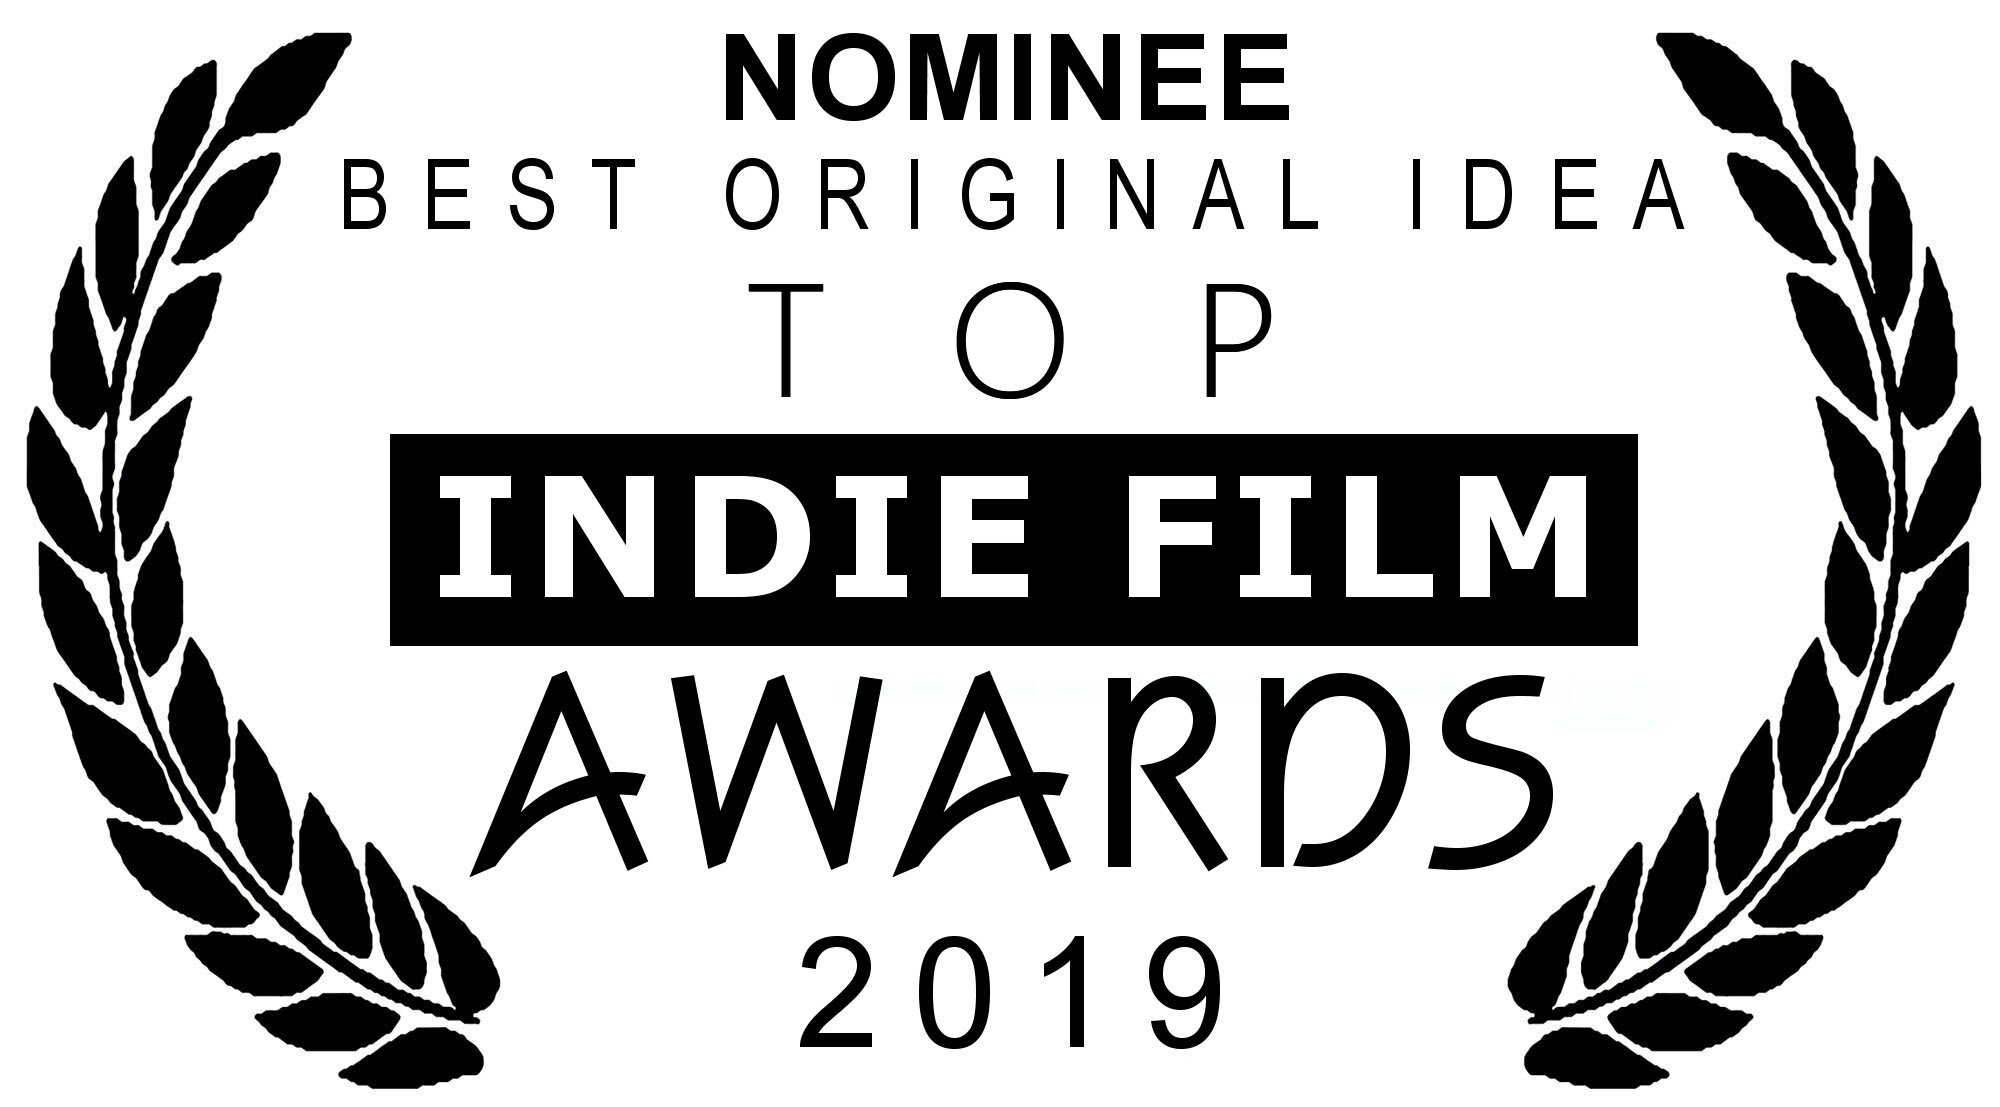 TRL_tifa-2019-nominee-best-original-idea.jpg